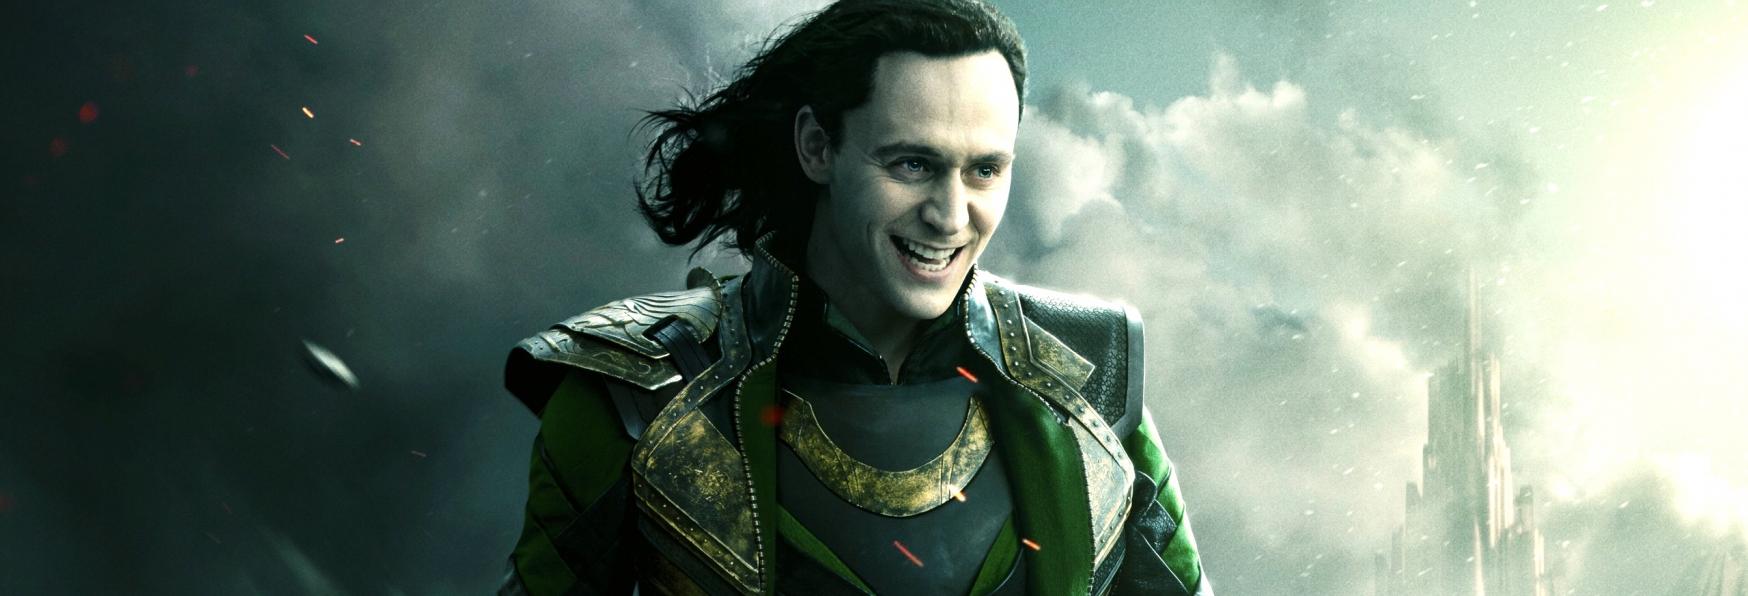 Ricominciano le Riprese delle Serie TV Loki e The Falcon and the Winter Soldier? Gli aggiornamenti